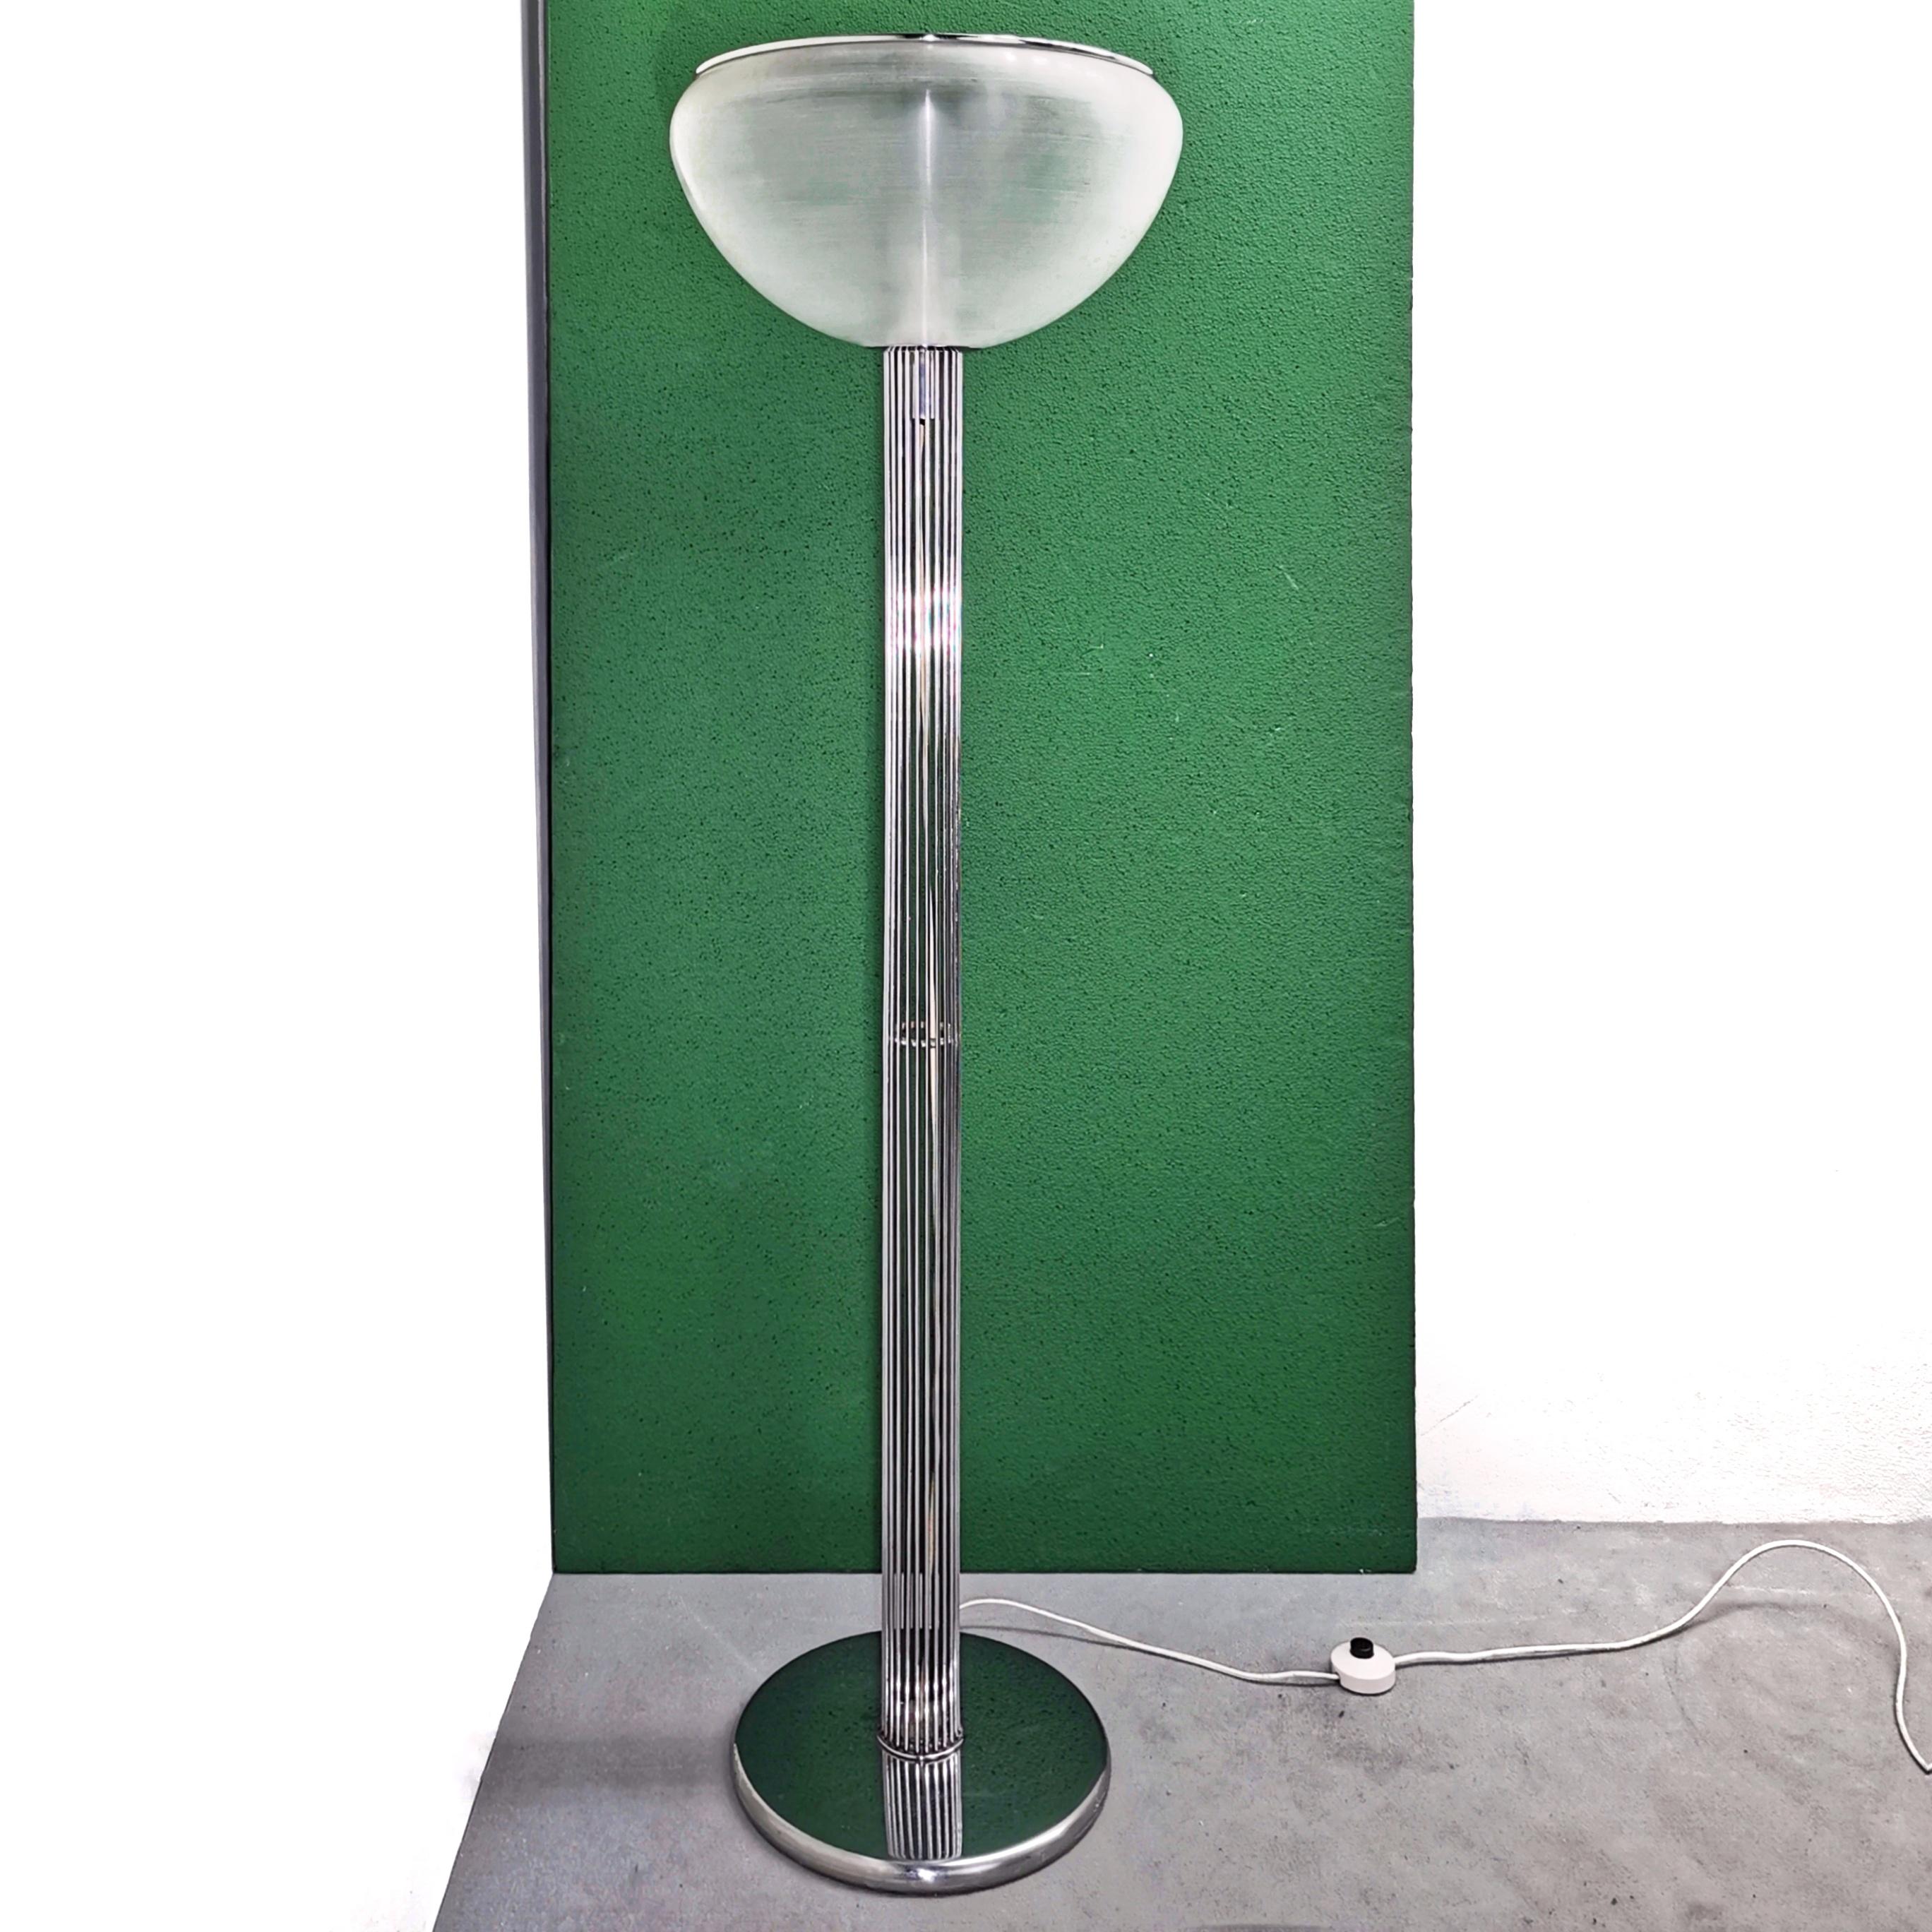 Stehleuchte Moana, entworfen in den 1970er Jahren von Luigi Massoni für Guzzini. Verchromte Stange und matt gebürsteter Acryl-Lampenschirm mit verchromter Abdeckung. 
Guzzini Marke in der Kunststoff-Lampenschirm wie auf dem Foto sichtbar
Der Zustand